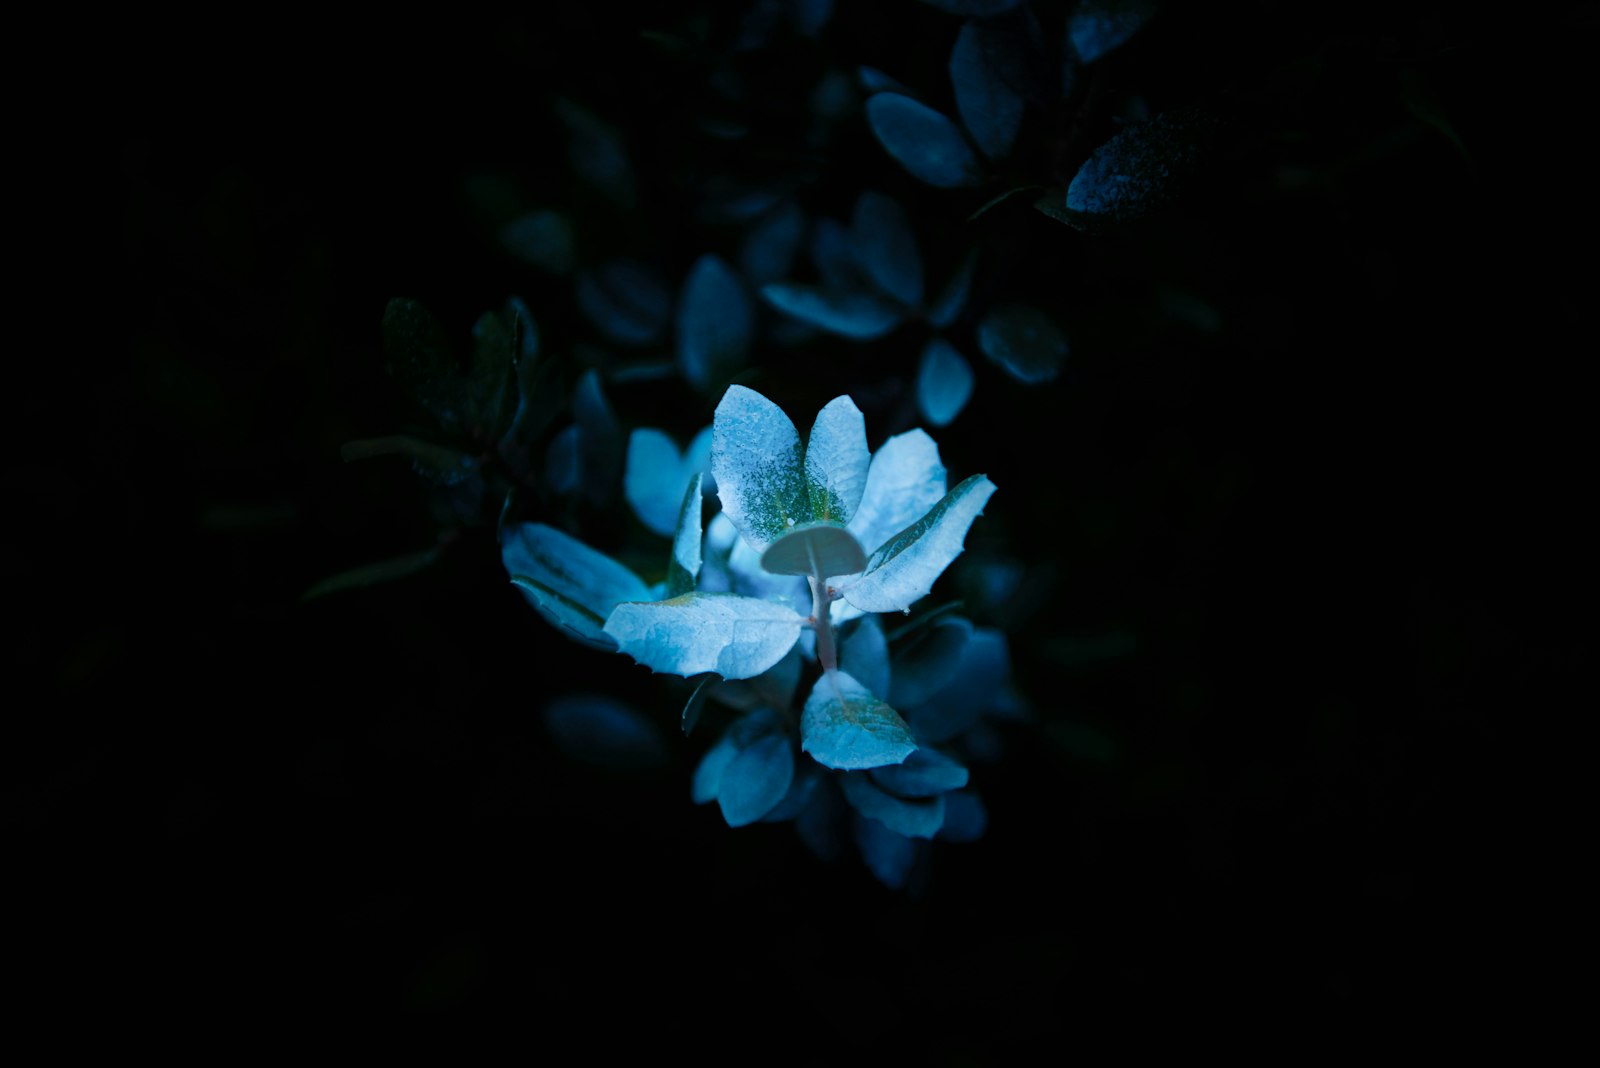 Nikon D810 + Nikon AF-S Nikkor 24-70mm F2.8E ED VR sample photo. White petal flower photography